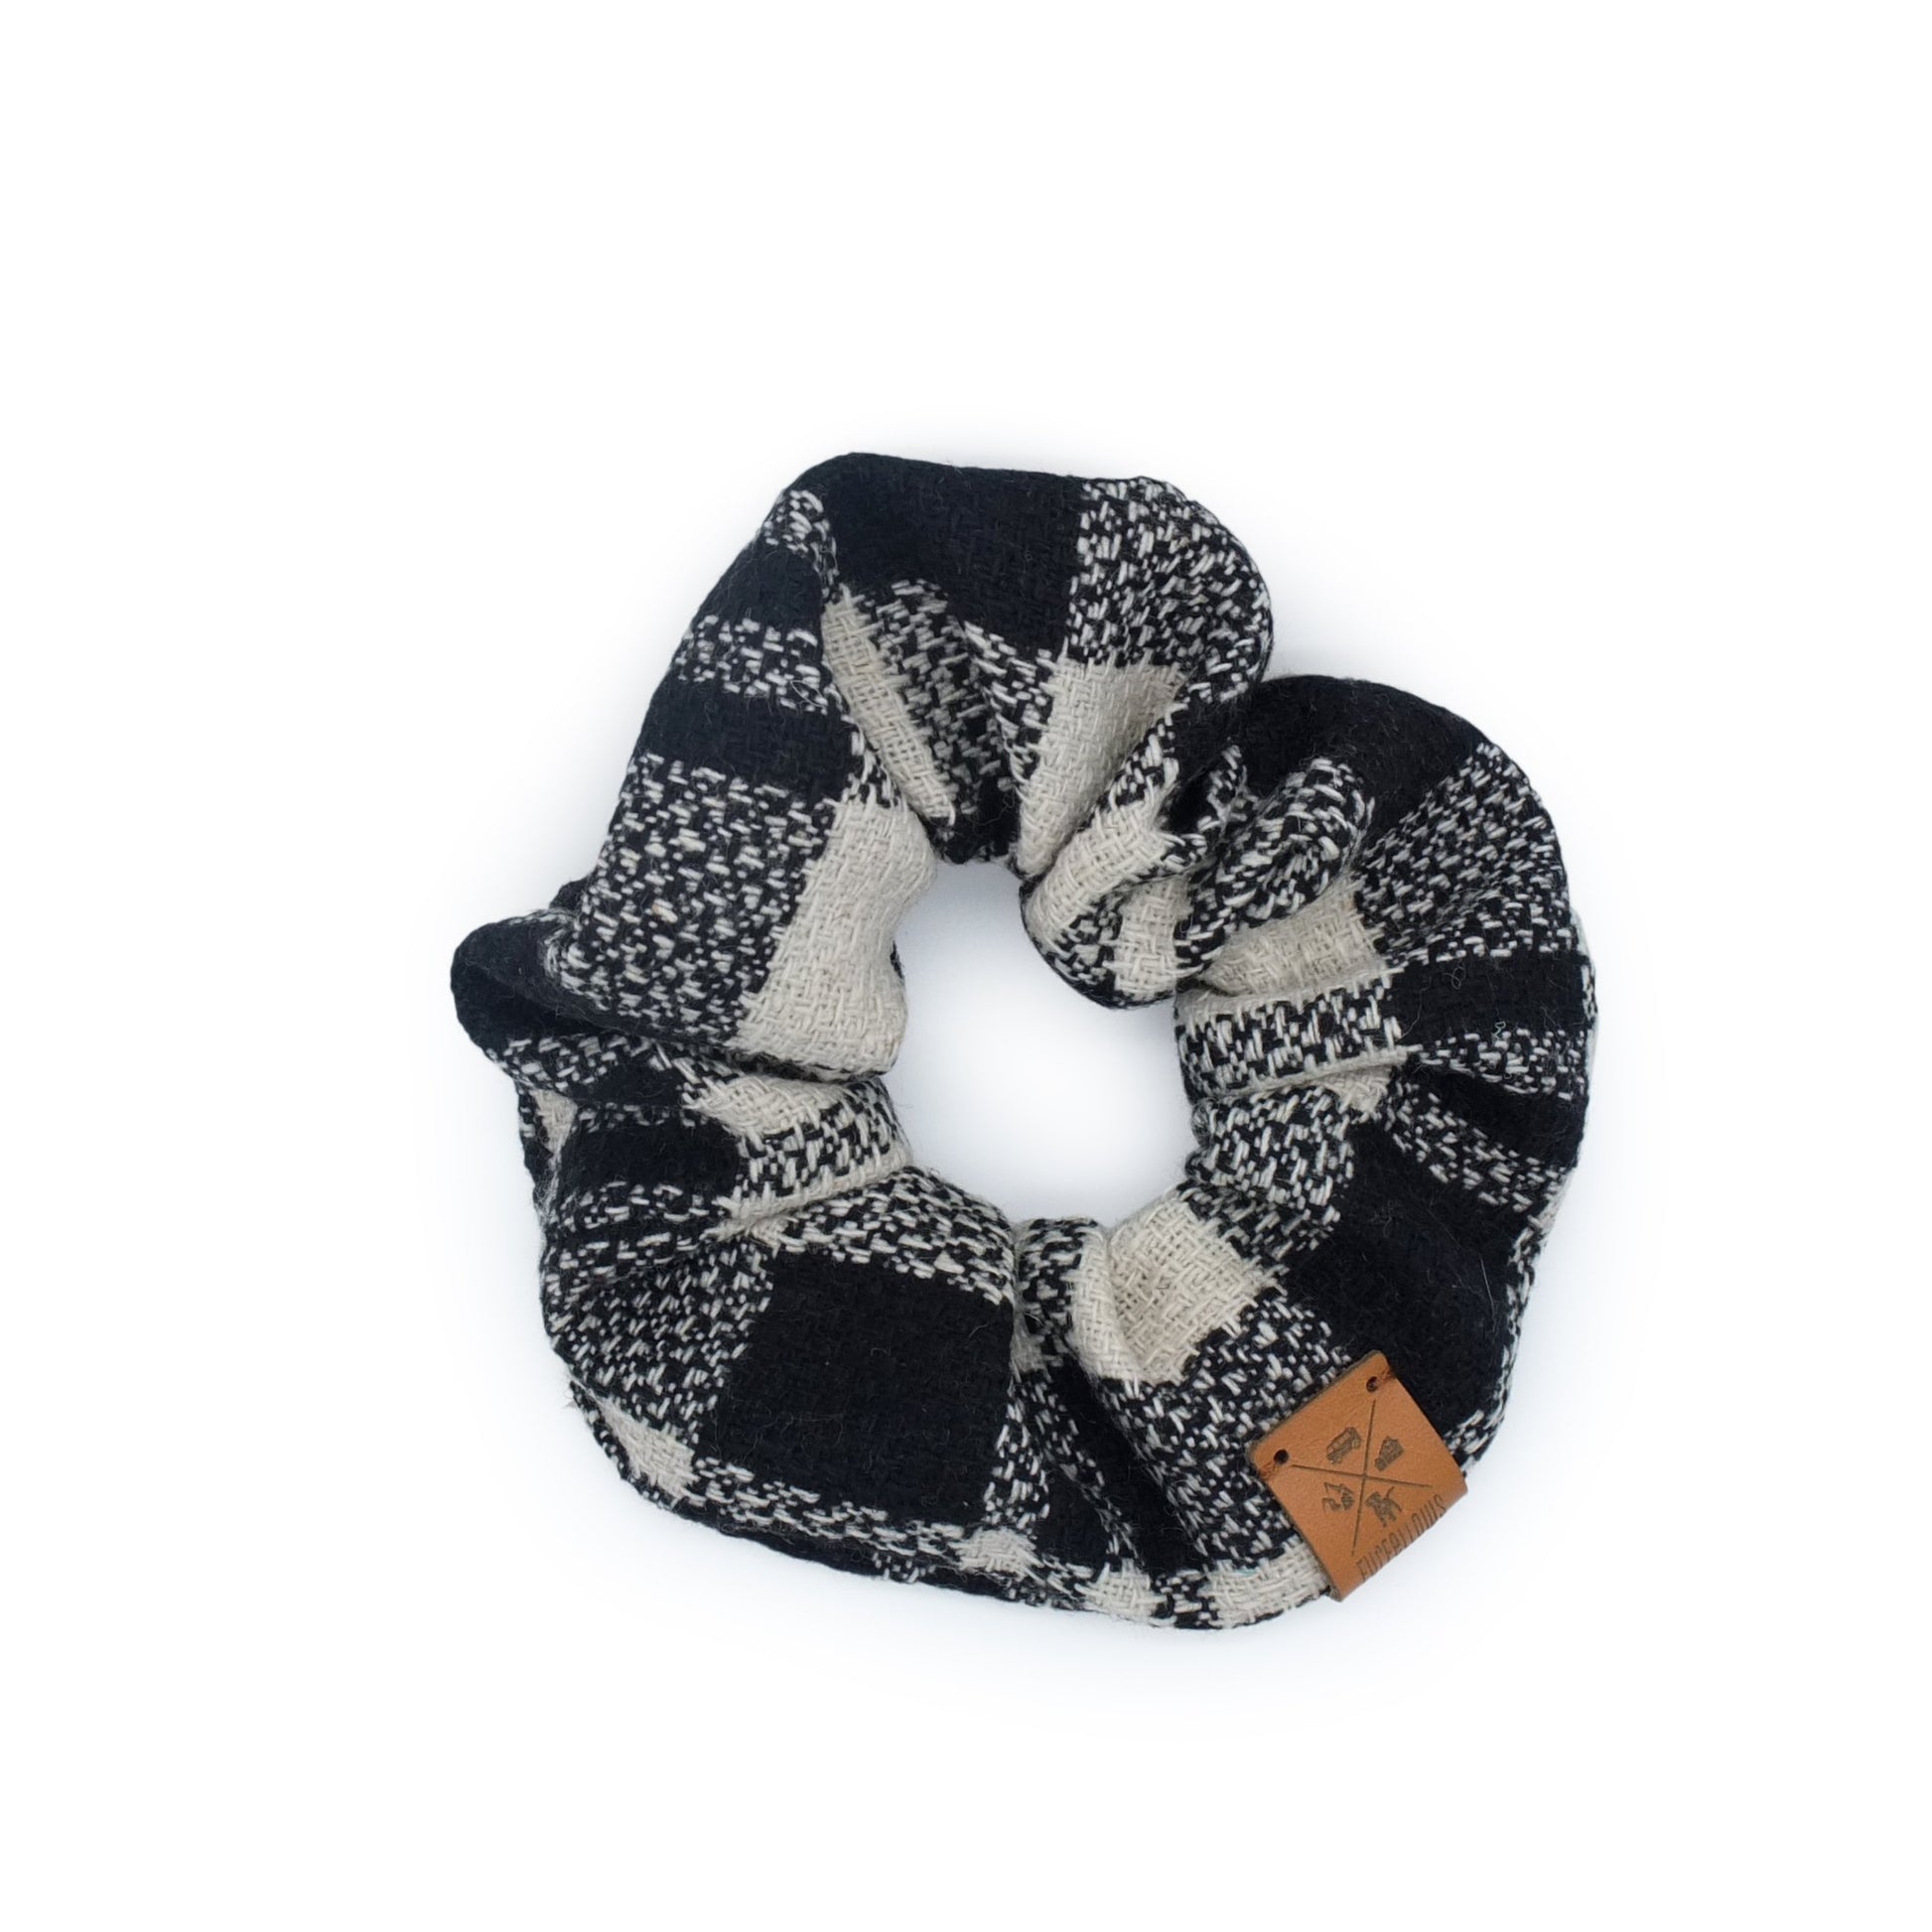 handgefertigte XL Scrunchies passend zu Furfellows Hundehalsband und Partnerlooks, handgemachte Unikate für Hund und Halter:in